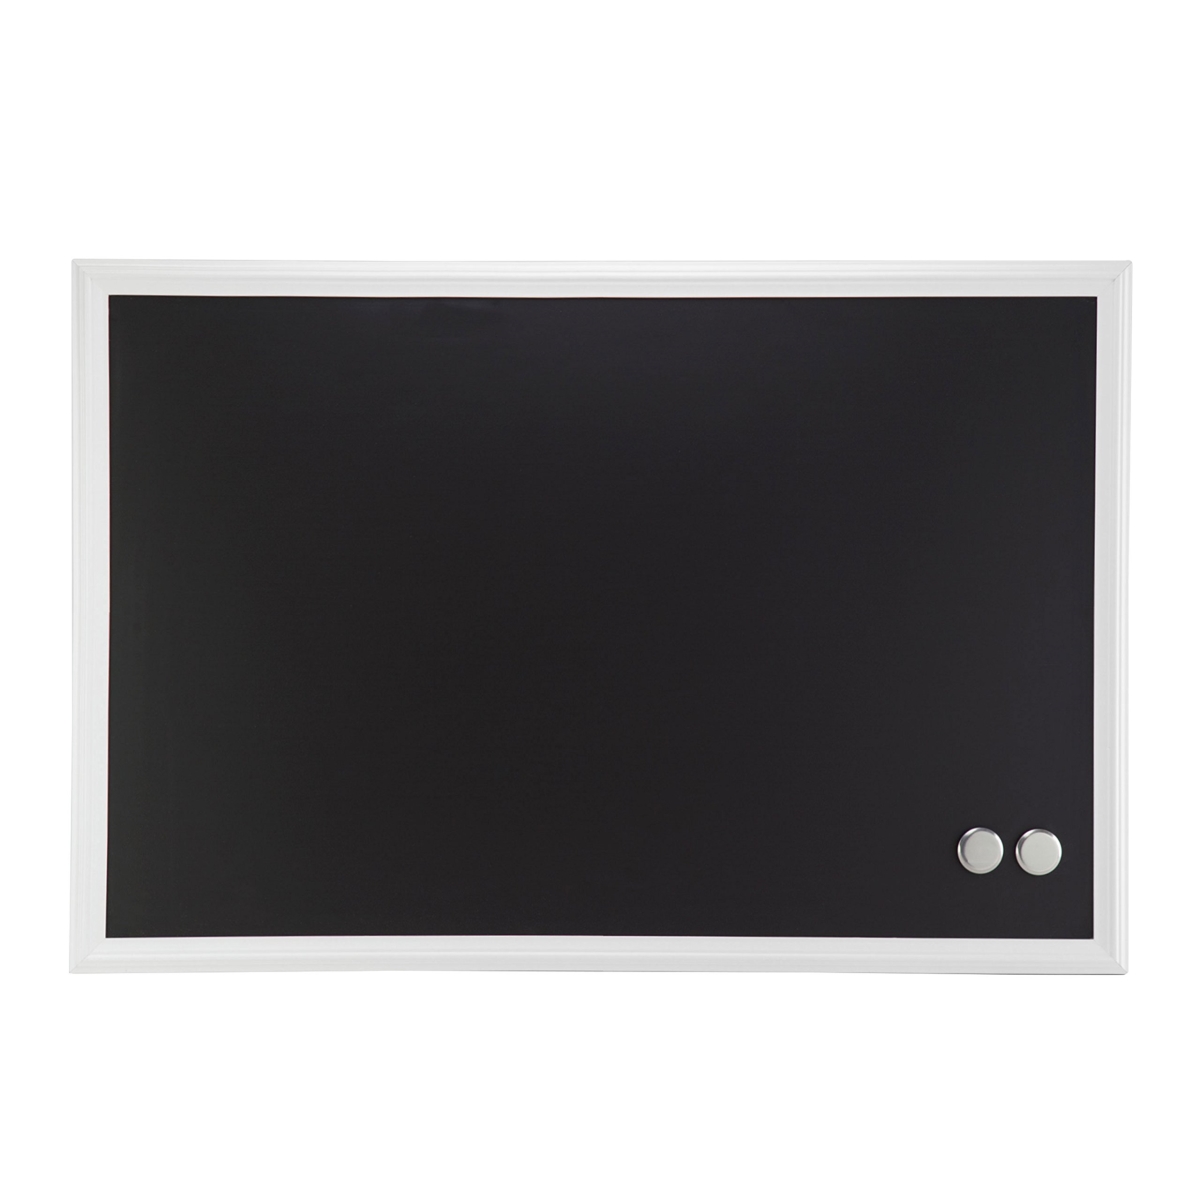 Ubrands 2073u0001 Magnetic Chalk Board Black